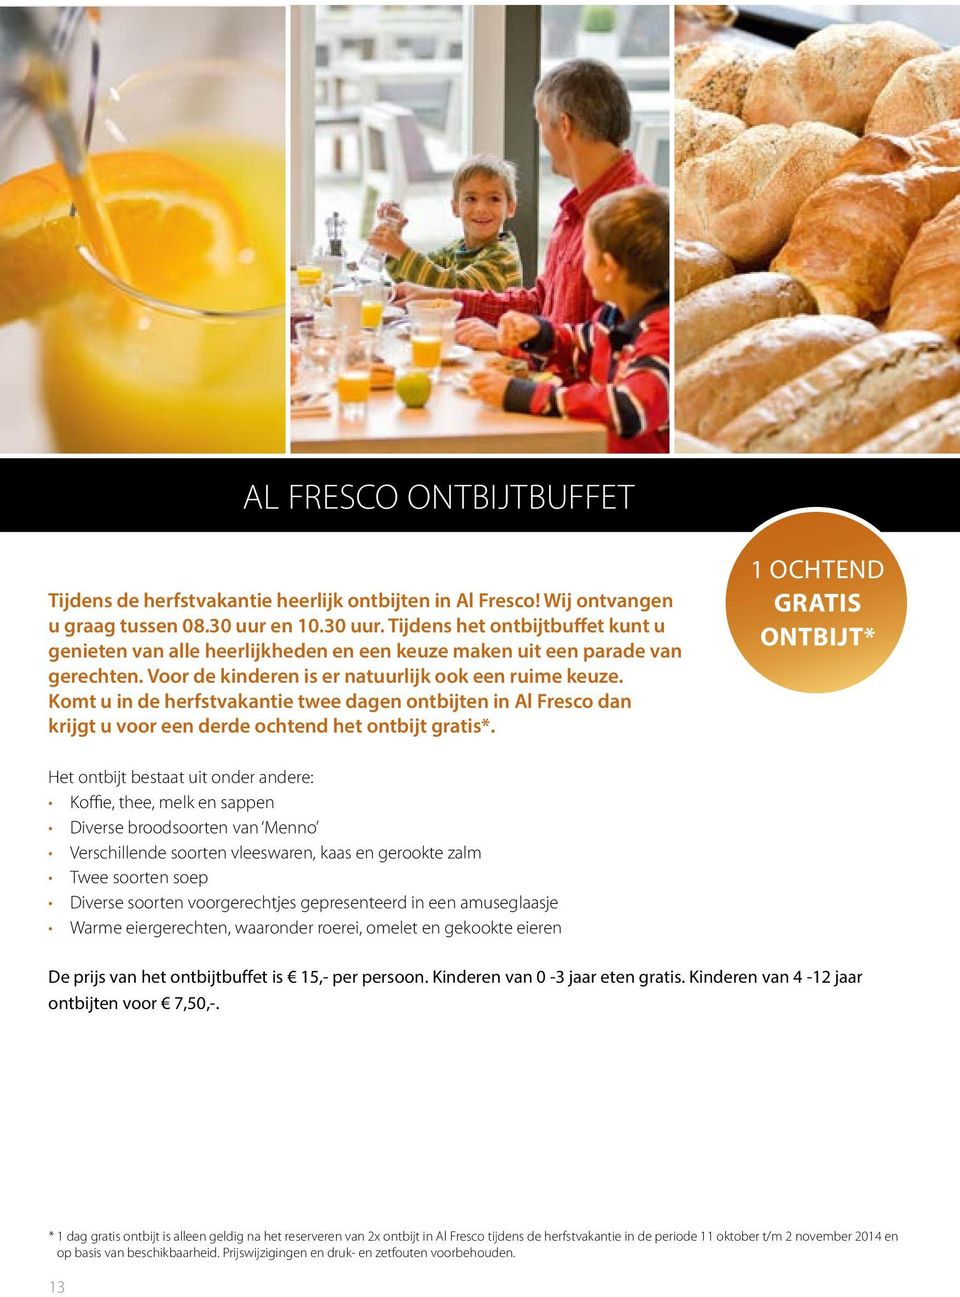 Komt u in de herfstvakantie twee dagen ontbijten in Al Fresco dan krijgt u voor een derde ochtend het ontbijt gratis*.